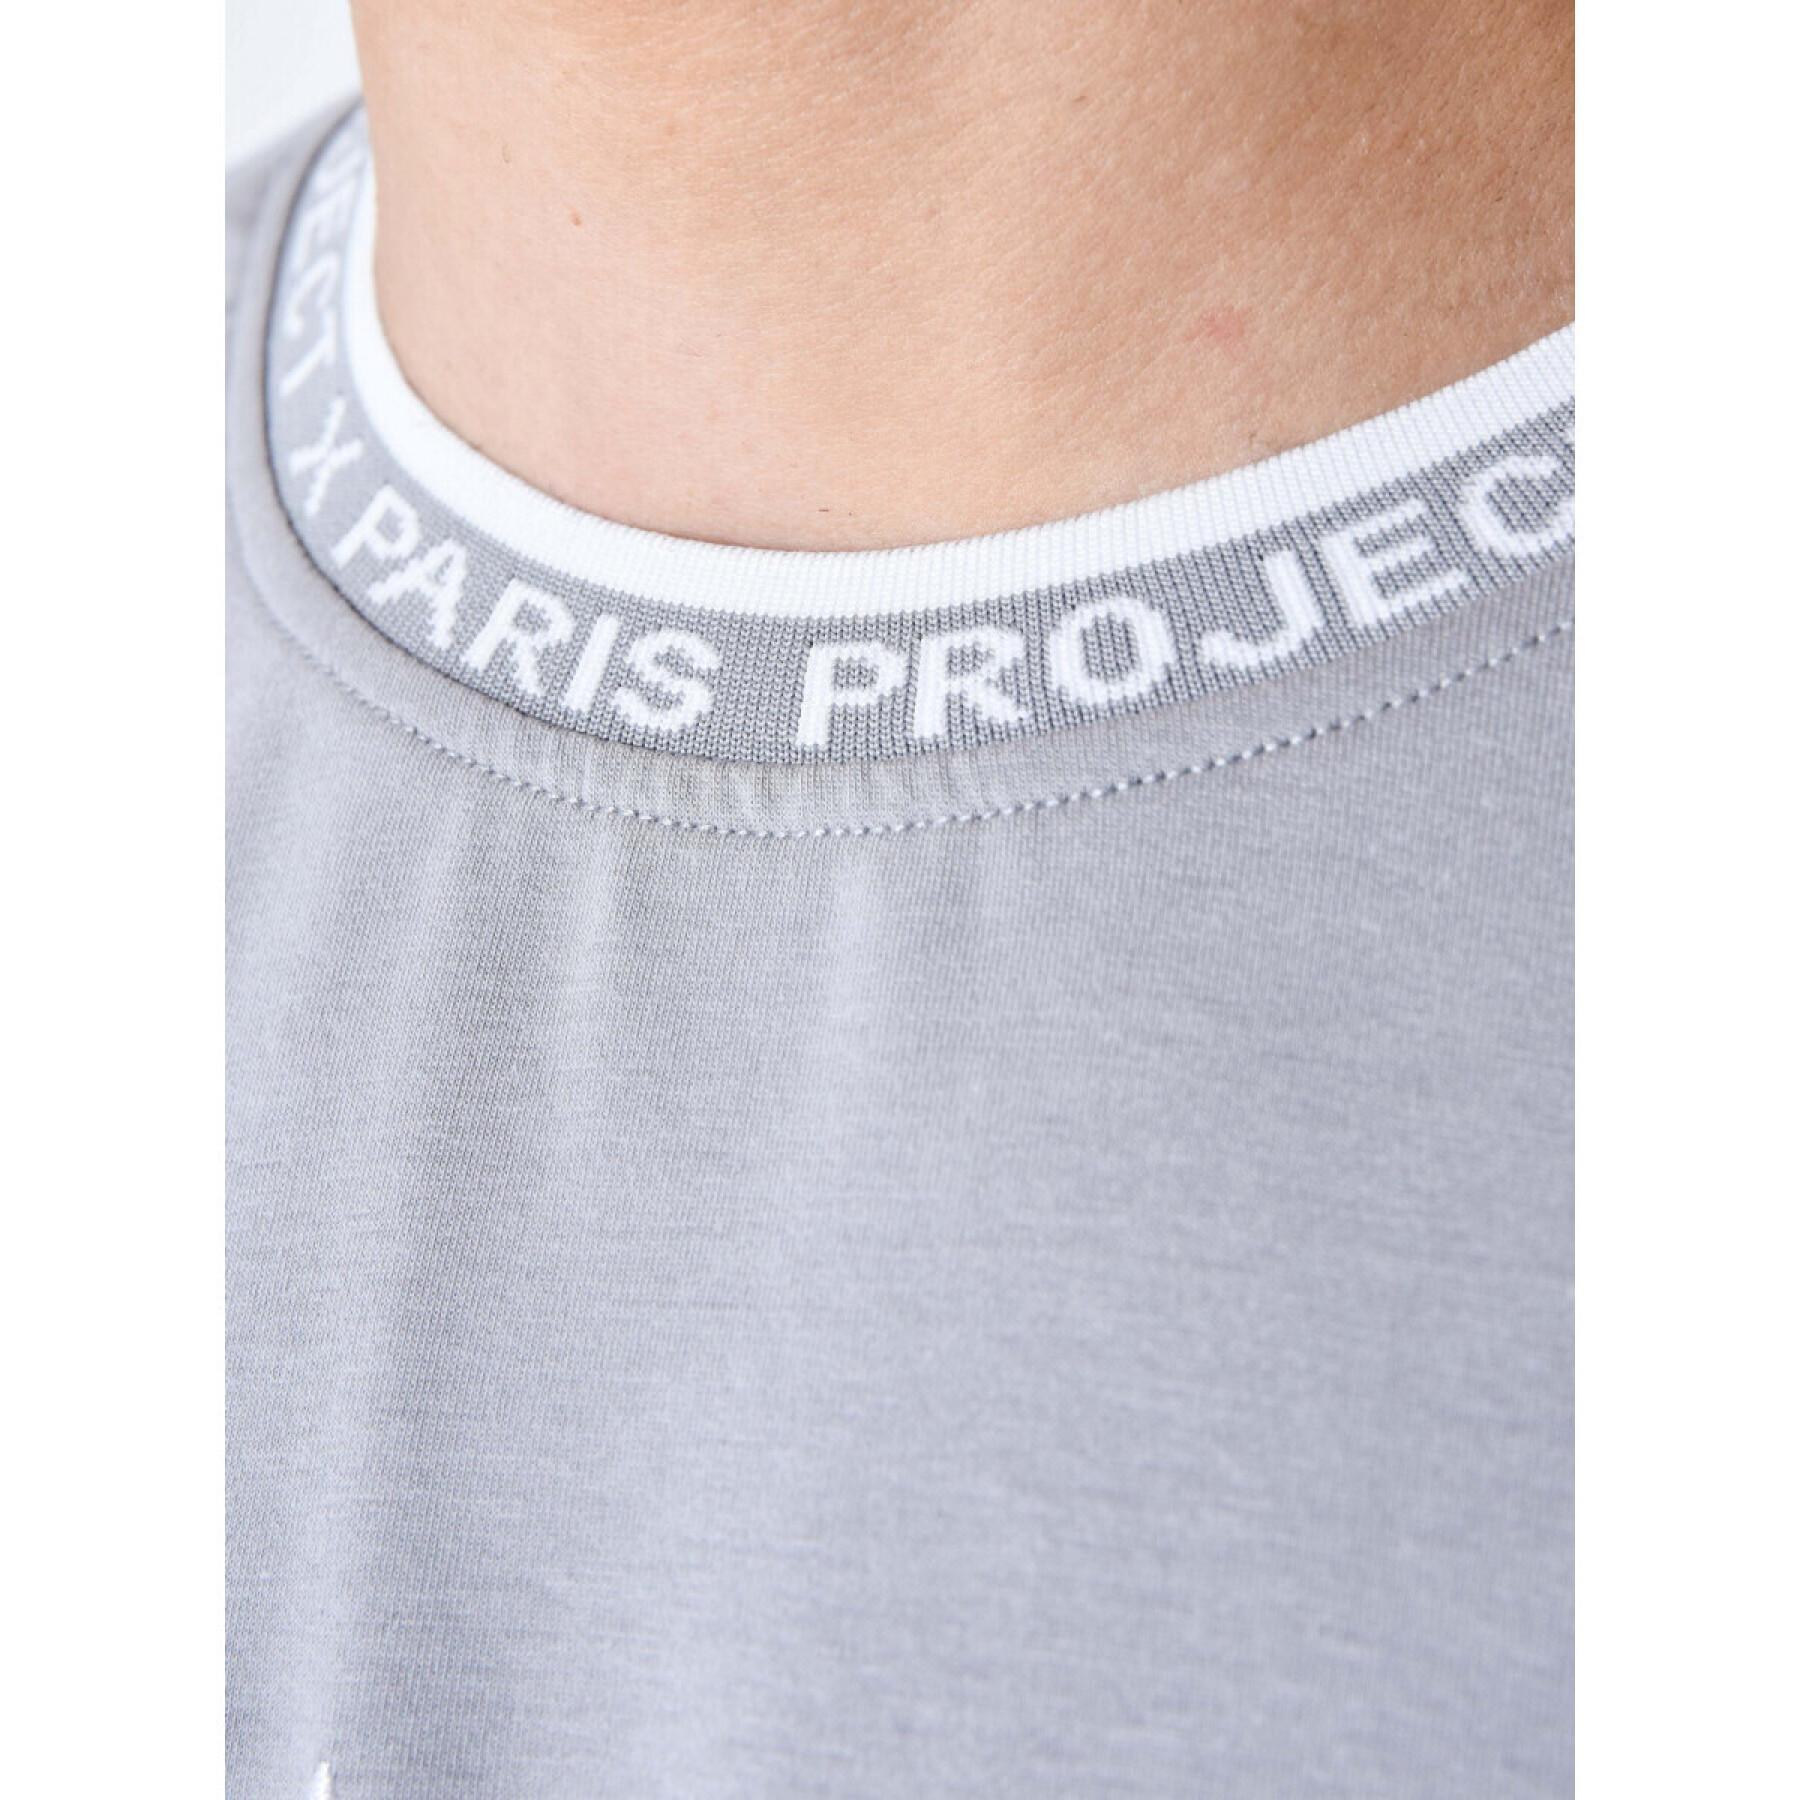 T-shirt logo brodé en relief Project X Paris